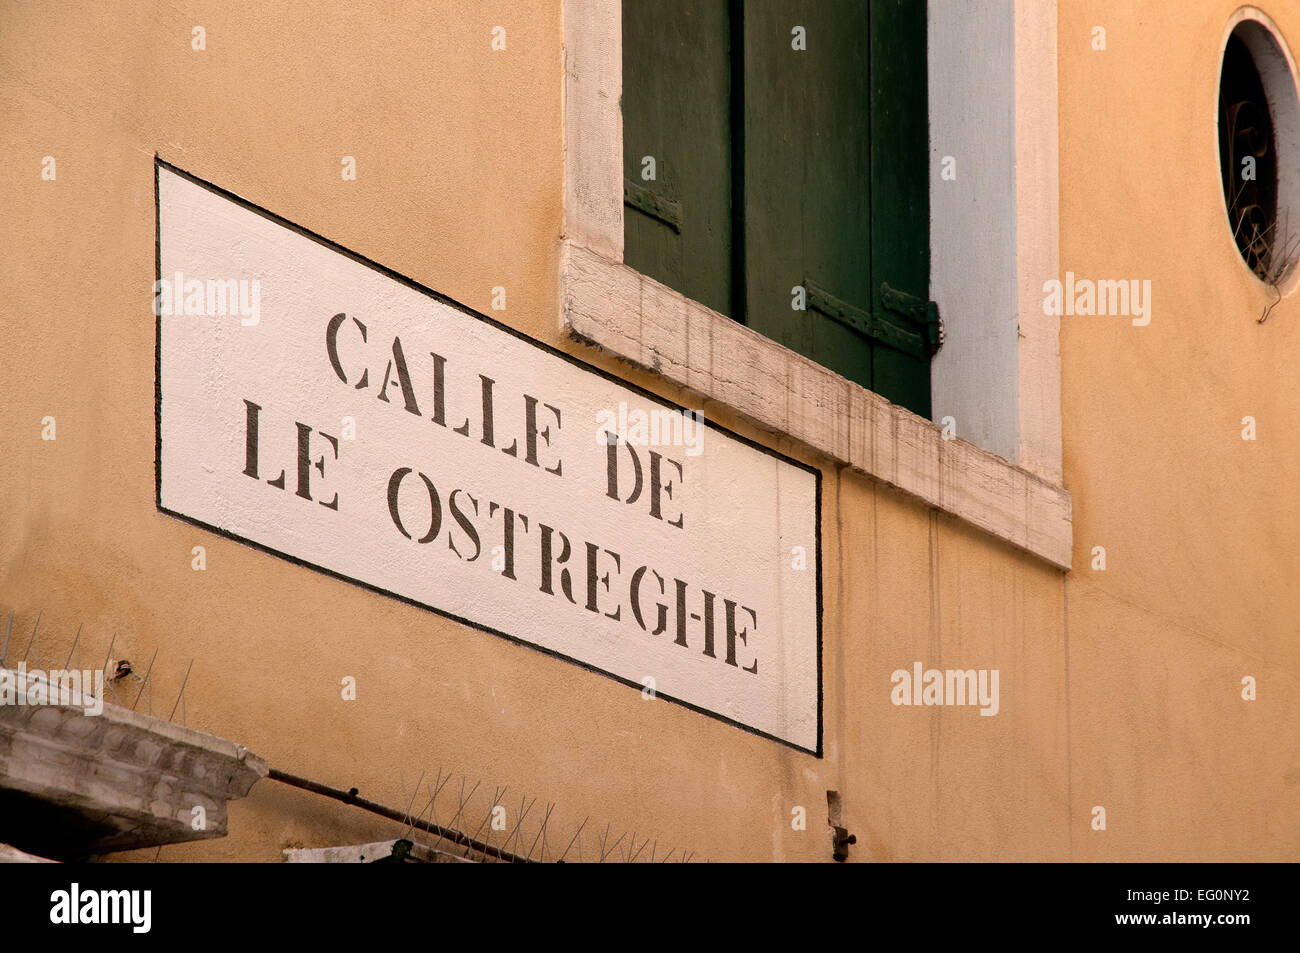 Street sign reading Calle de le Ostreghe Venice Italy Stock Photo